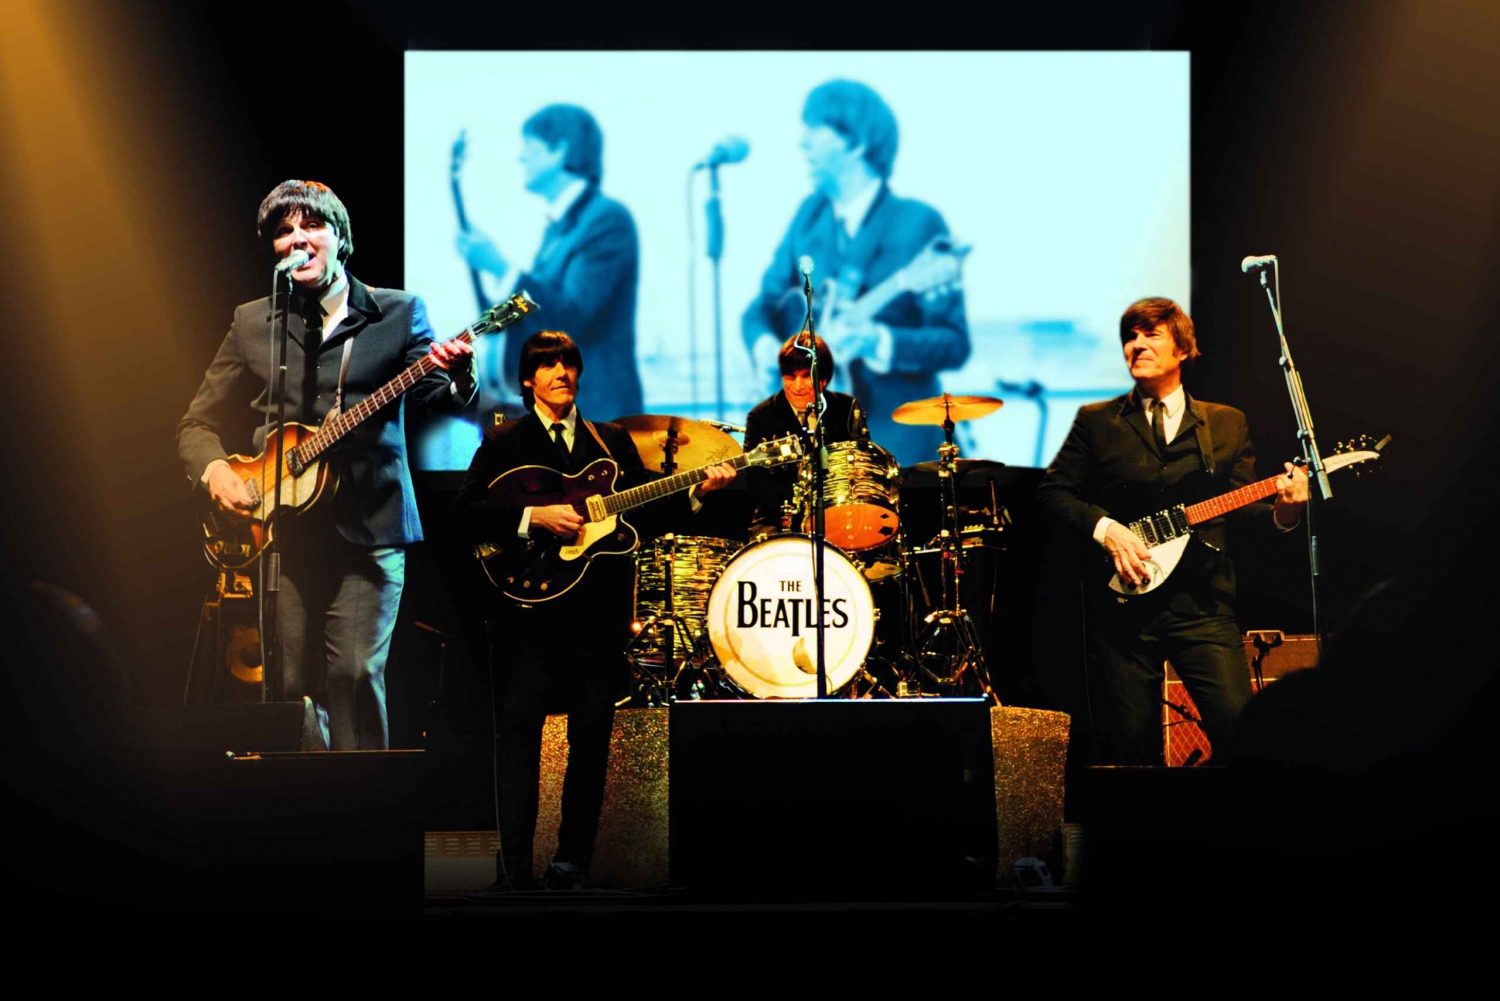 Berlin: 'Alt, hvad du behøver, er kærlighed!' The Beatles musikalske billet